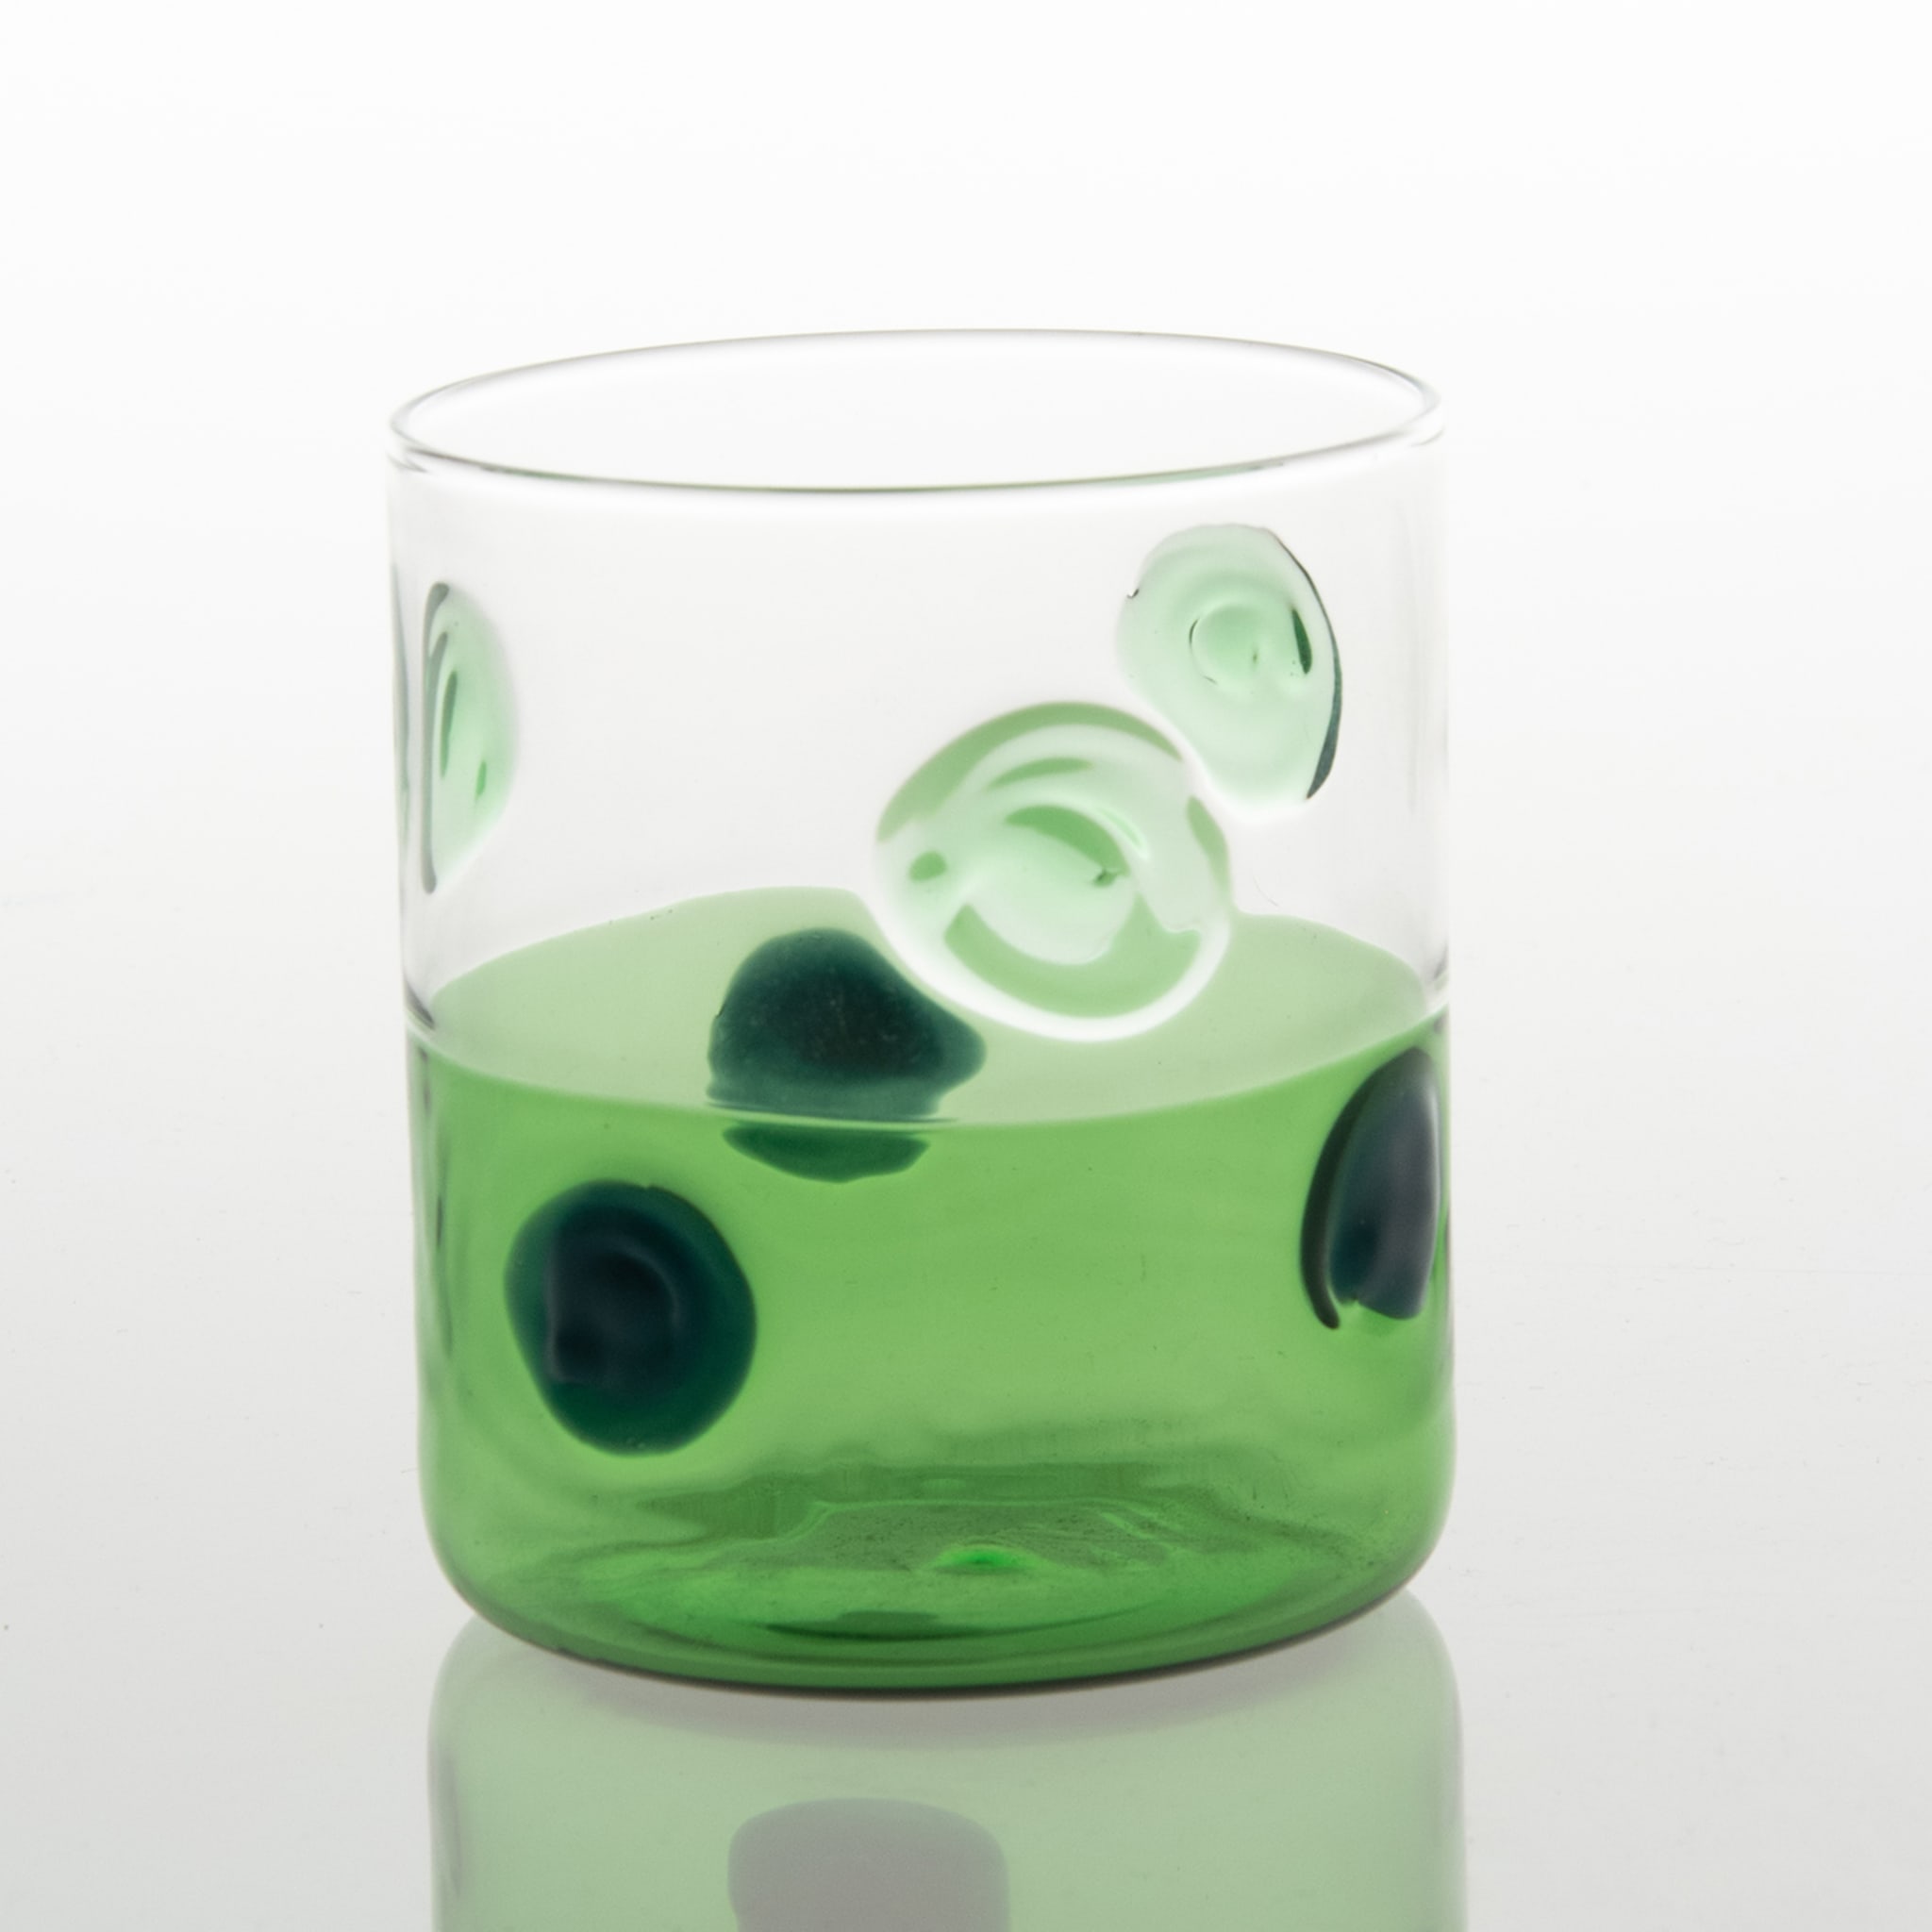 Mezzo & Mezzo Bolle Green Glass - Alternative view 1